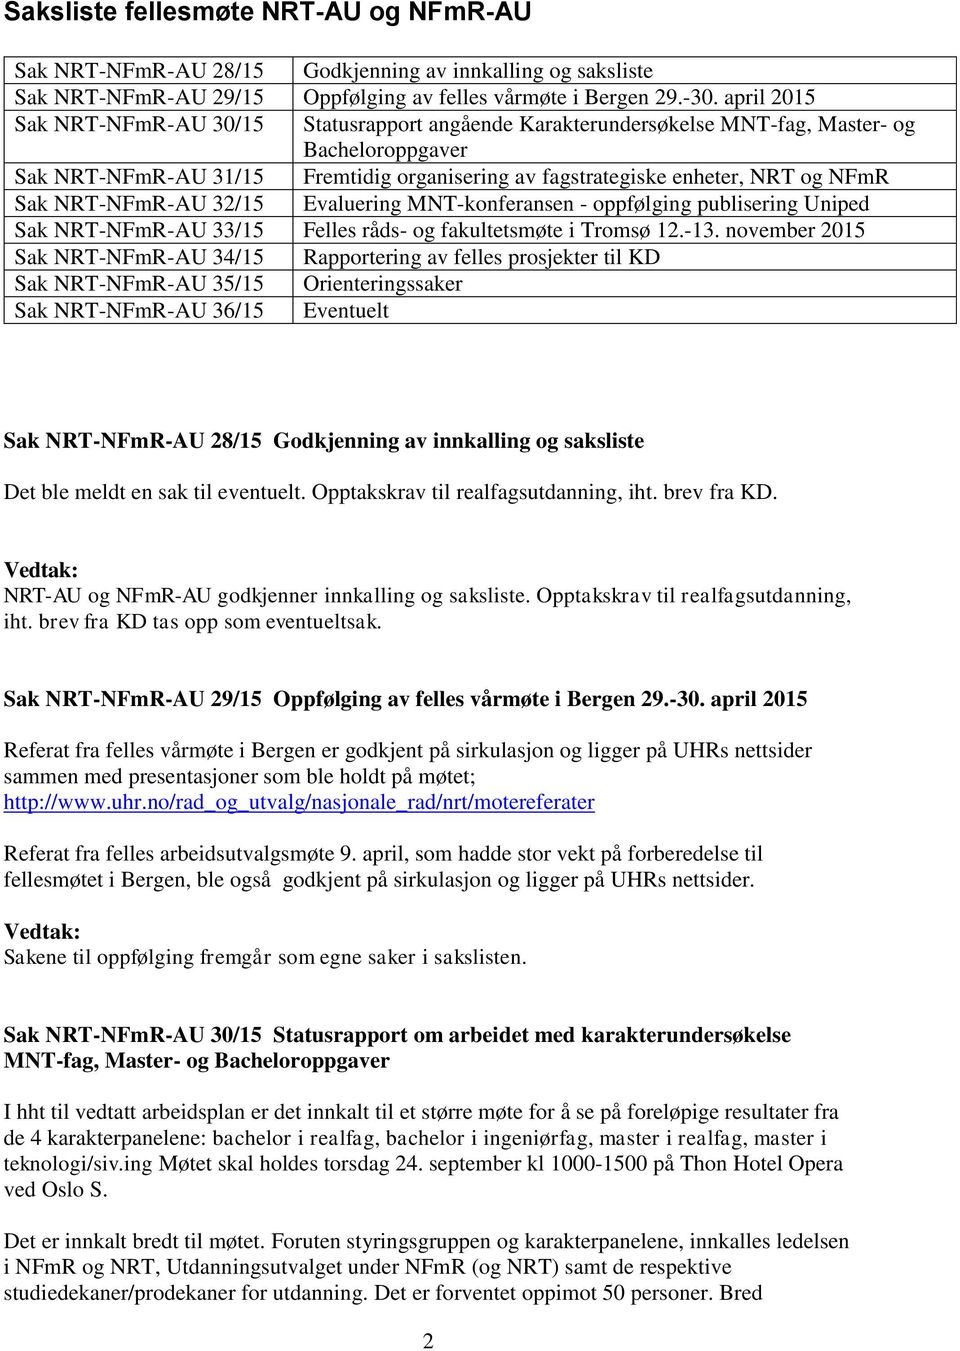 Sak NRT-NFmR-AU 32/15 Evaluering MNT-konferansen - oppfølging publisering Uniped Sak NRT-NFmR-AU 33/15 Felles råds- og fakultetsmøte i Tromsø 12.-13.